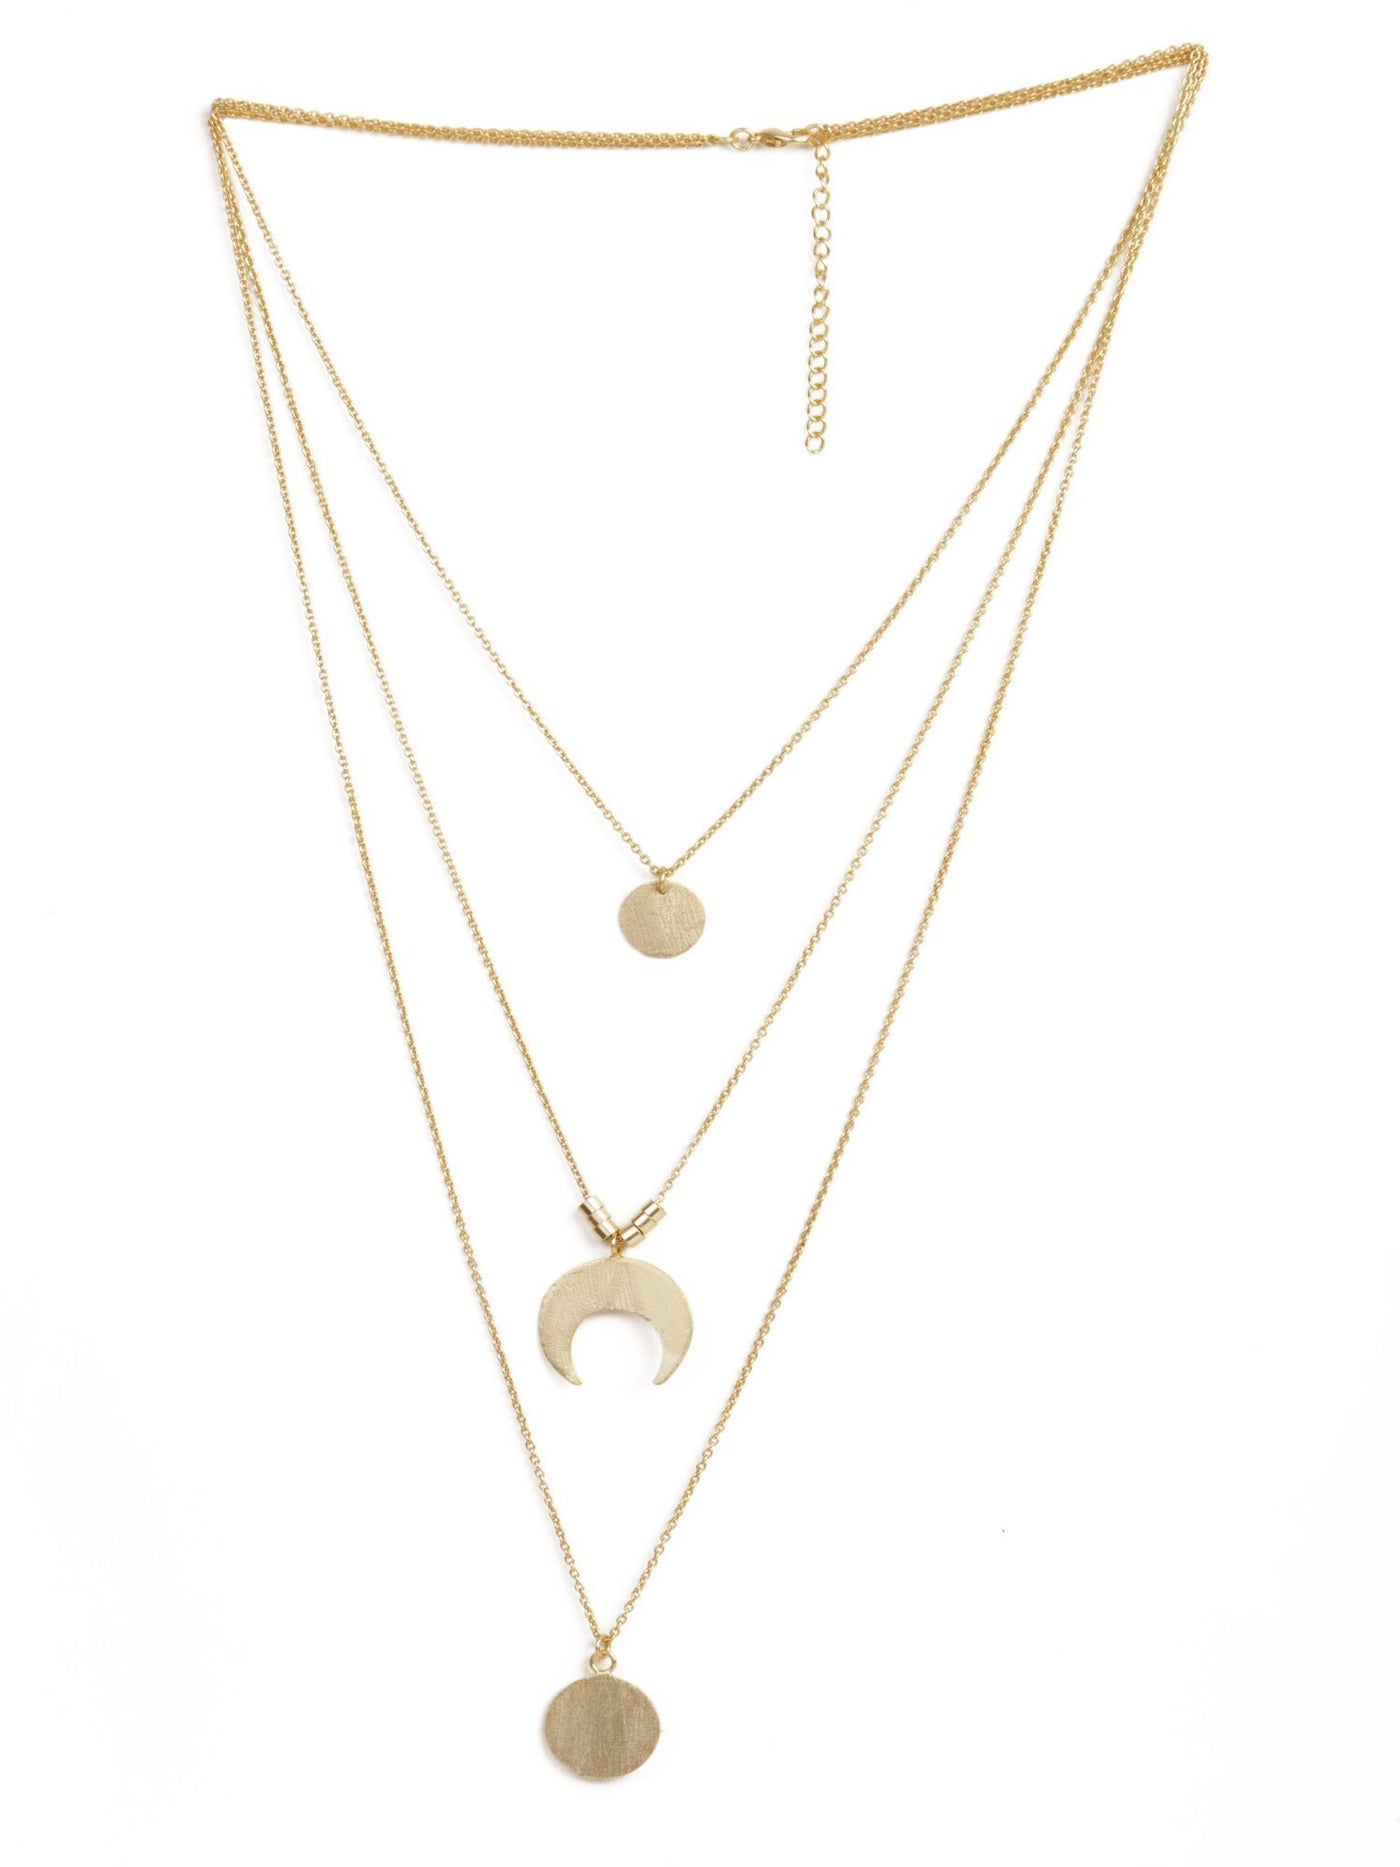 Beautiful Layered Gold Necklace - Stilskii